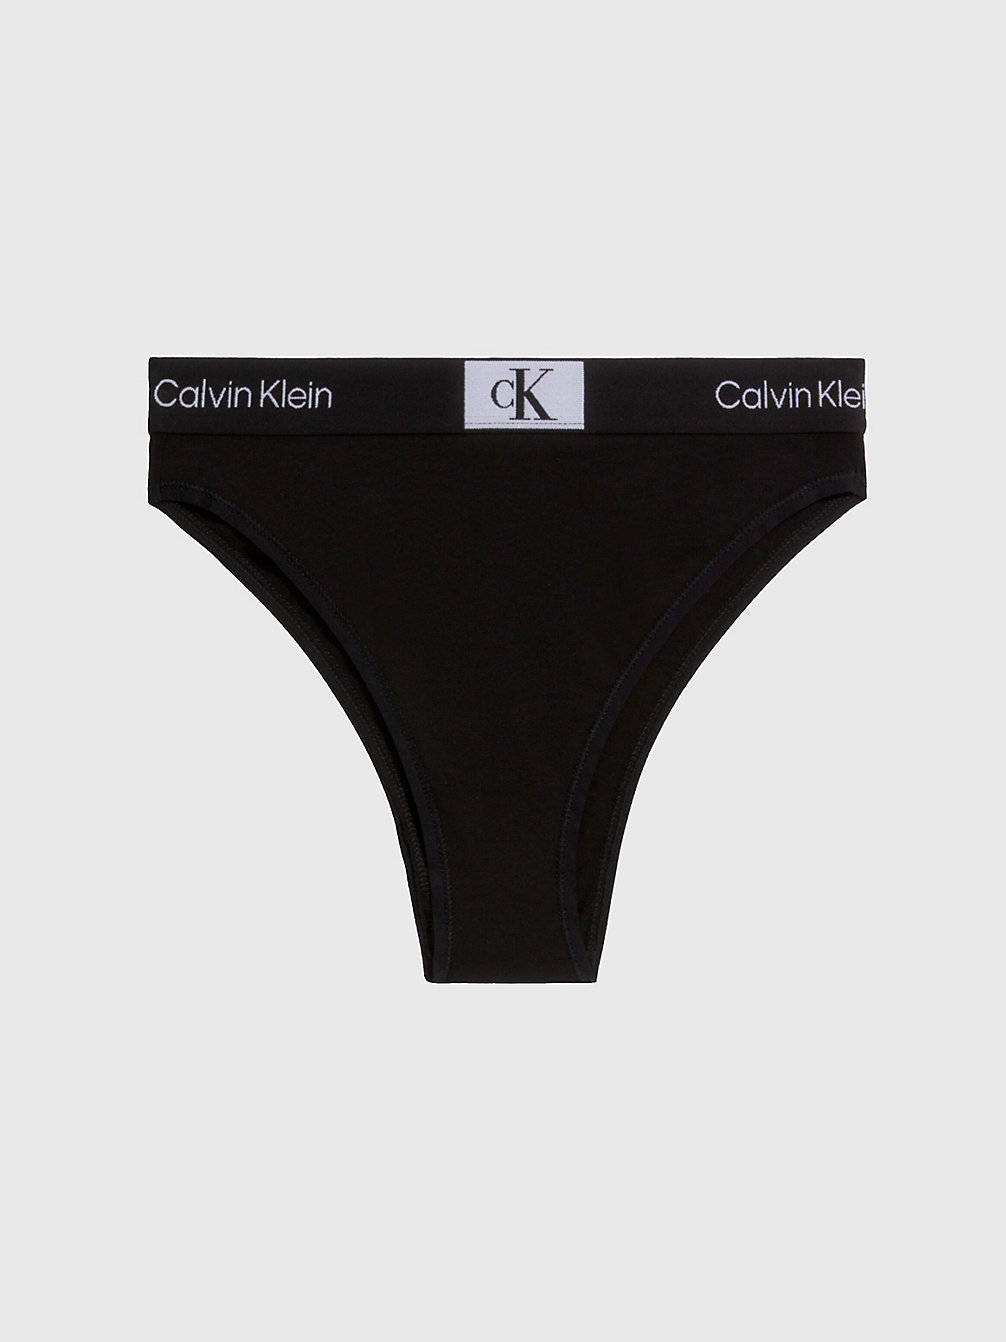 BLACK Brazilian Slip Mit Hoher Taille - Ck96 undefined Damen Calvin Klein